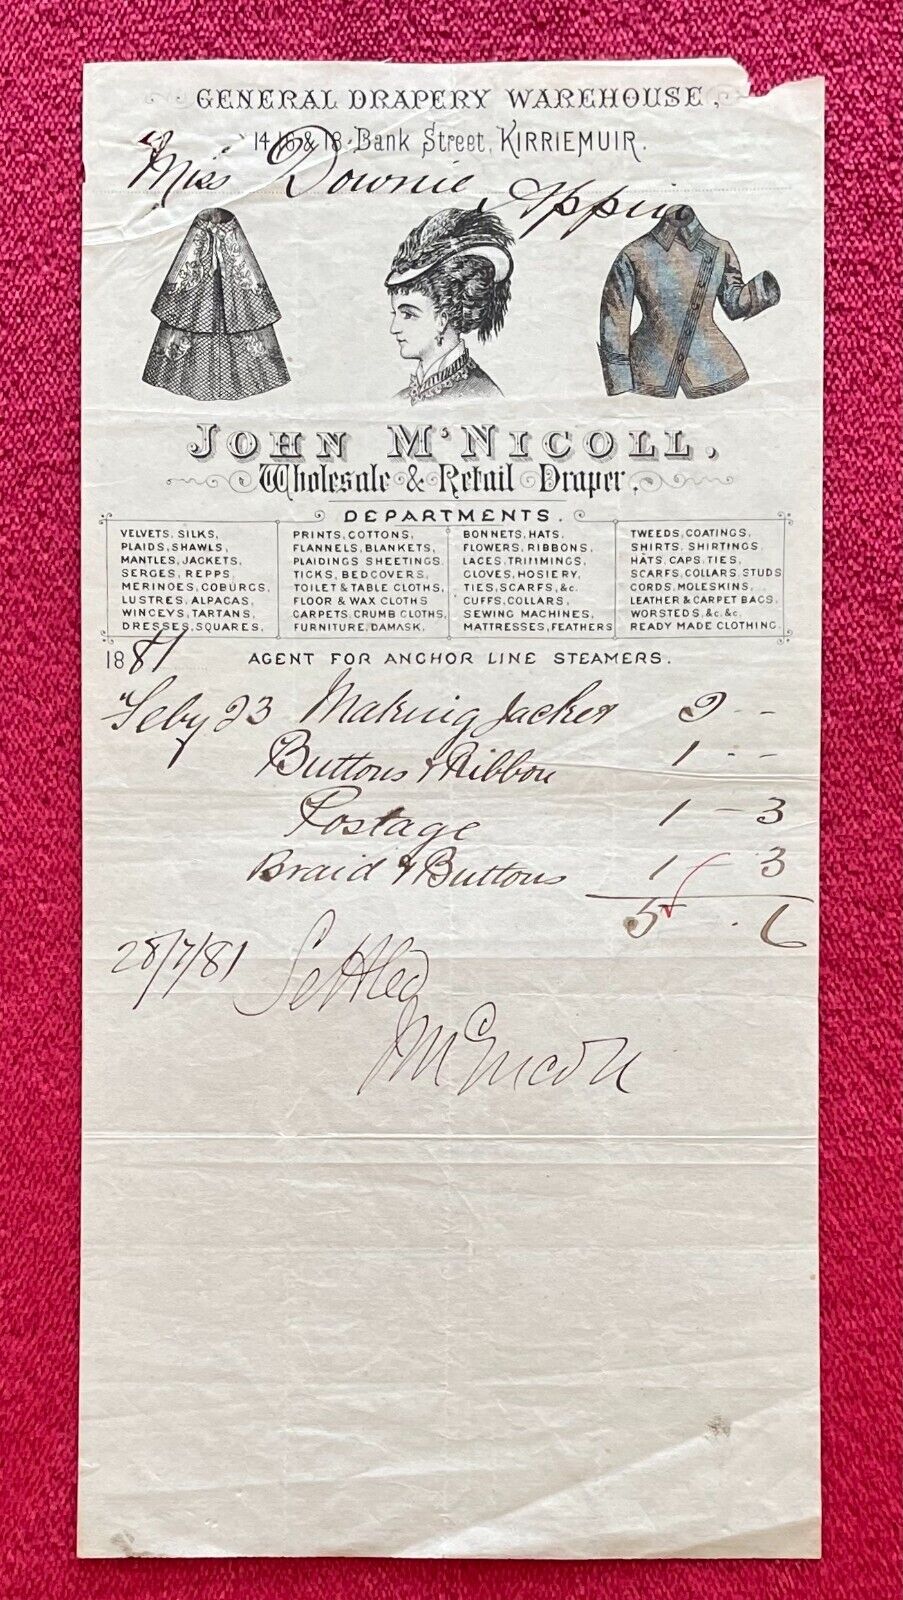 JOHN Mc NICOLL DRAPER 1881 BILLHEAD - KIRRIEMUIR, SCOTLAND - SOLD TO MISS DOWNIE